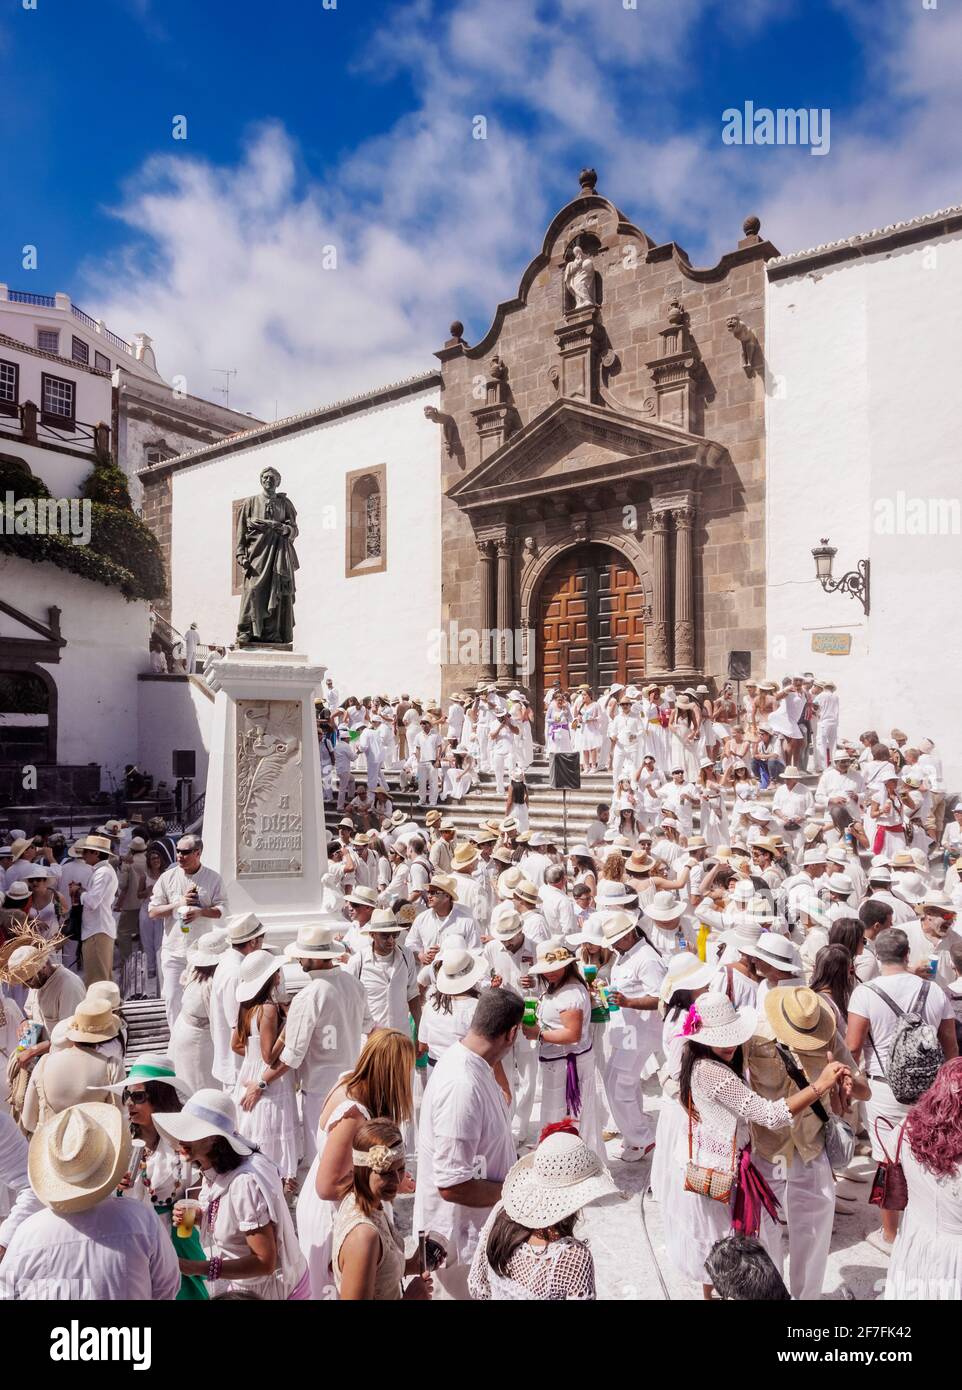 Los Indianos Carnival Party at Plaza de Espana in front of the El Salvador Church, Santa Cruz de La Palma, Canary Islands, Spain, Europe Stock Photo